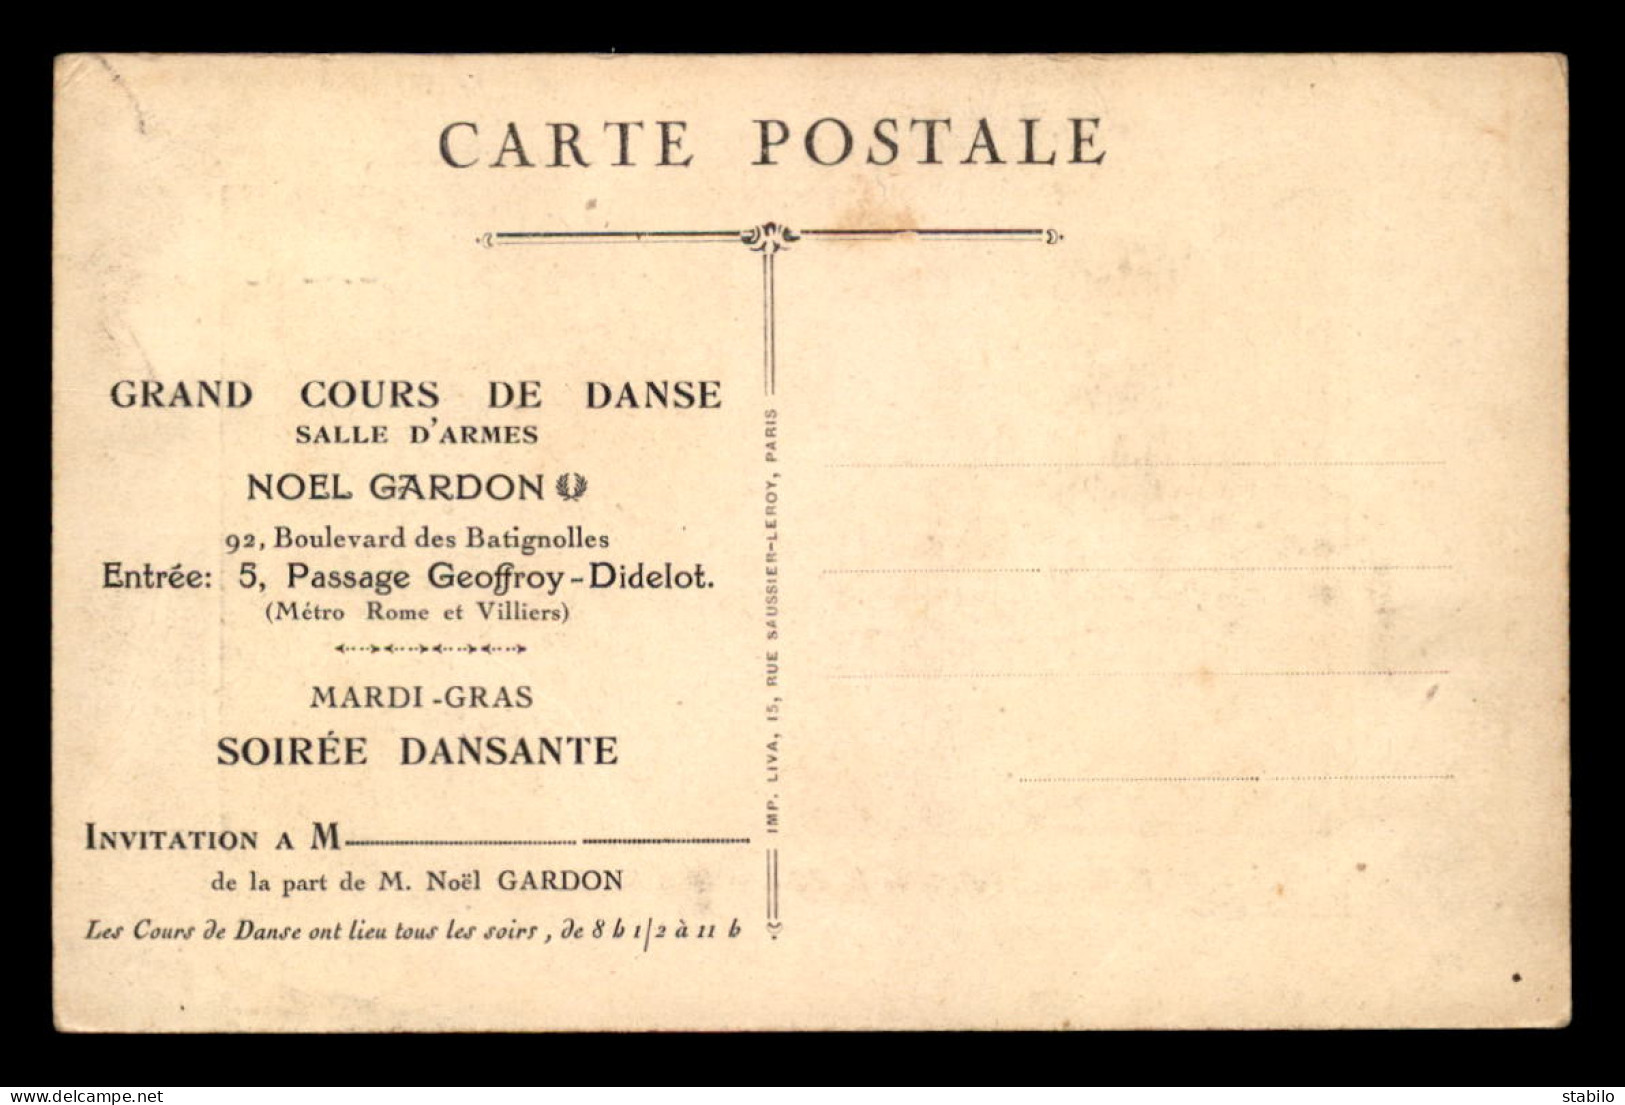 75 - PARIS 17EME - INVITATION AU GRAND CONCOURS DE DANSE SALLE D'ARMES NOEL GARDON, 92 BOULEVARD DES BATIGNOLLES  - Distrito: 17